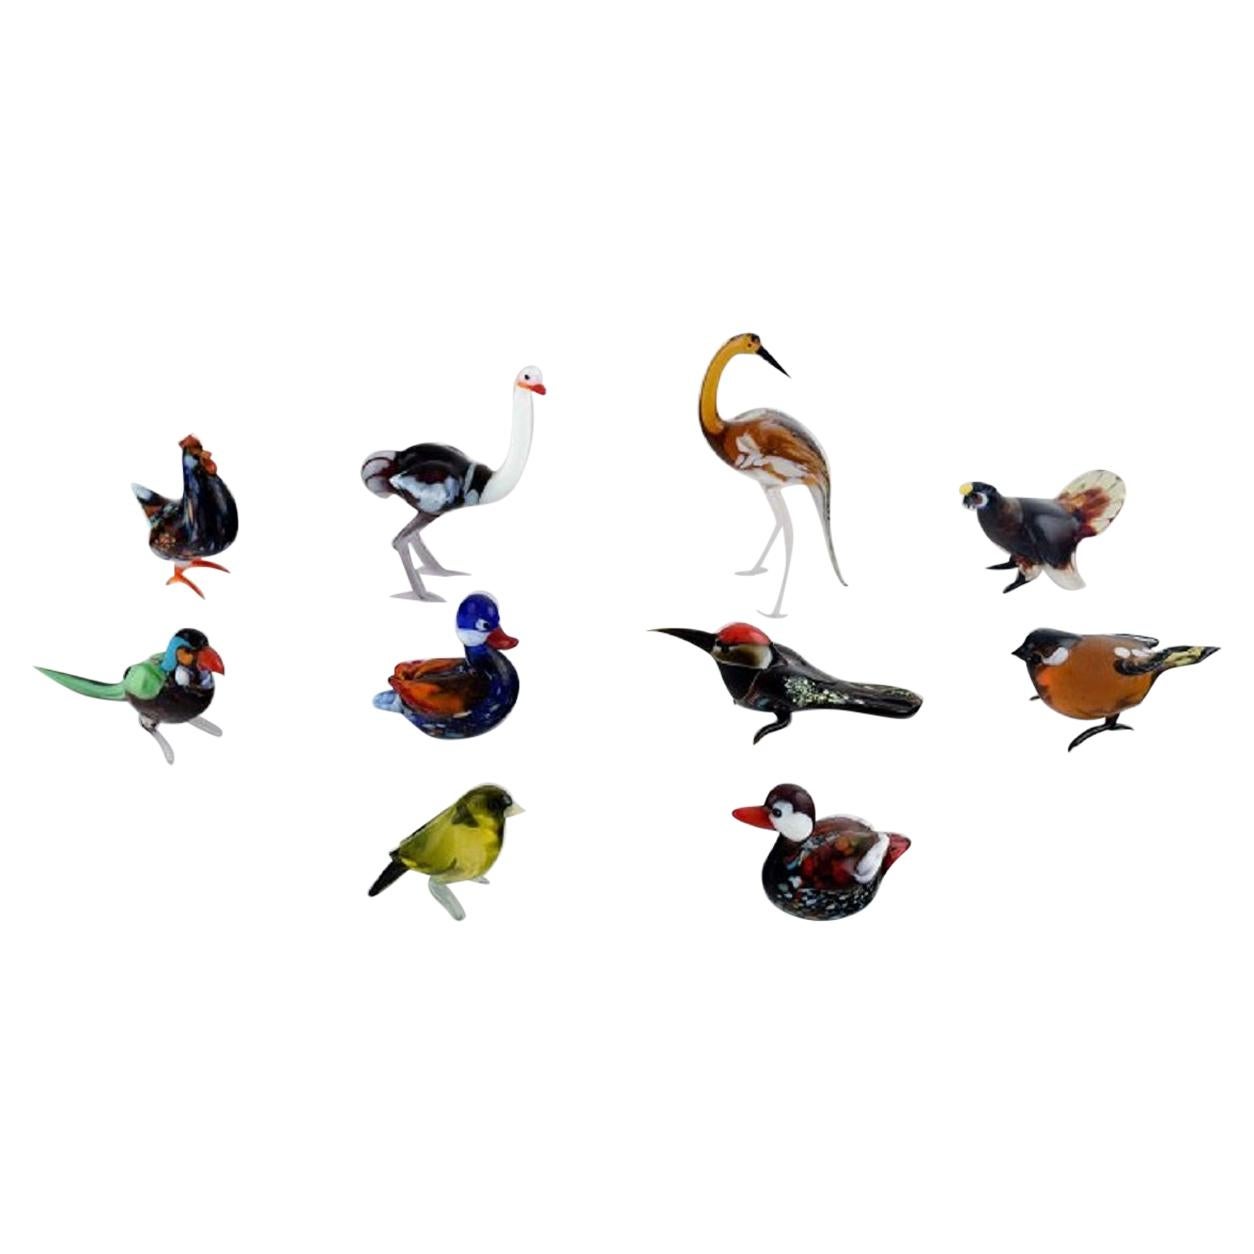 Schwedisches Kunstglas, zehn Miniaturfiguren in Form von Vögeln, 1970er-1980er Jahre